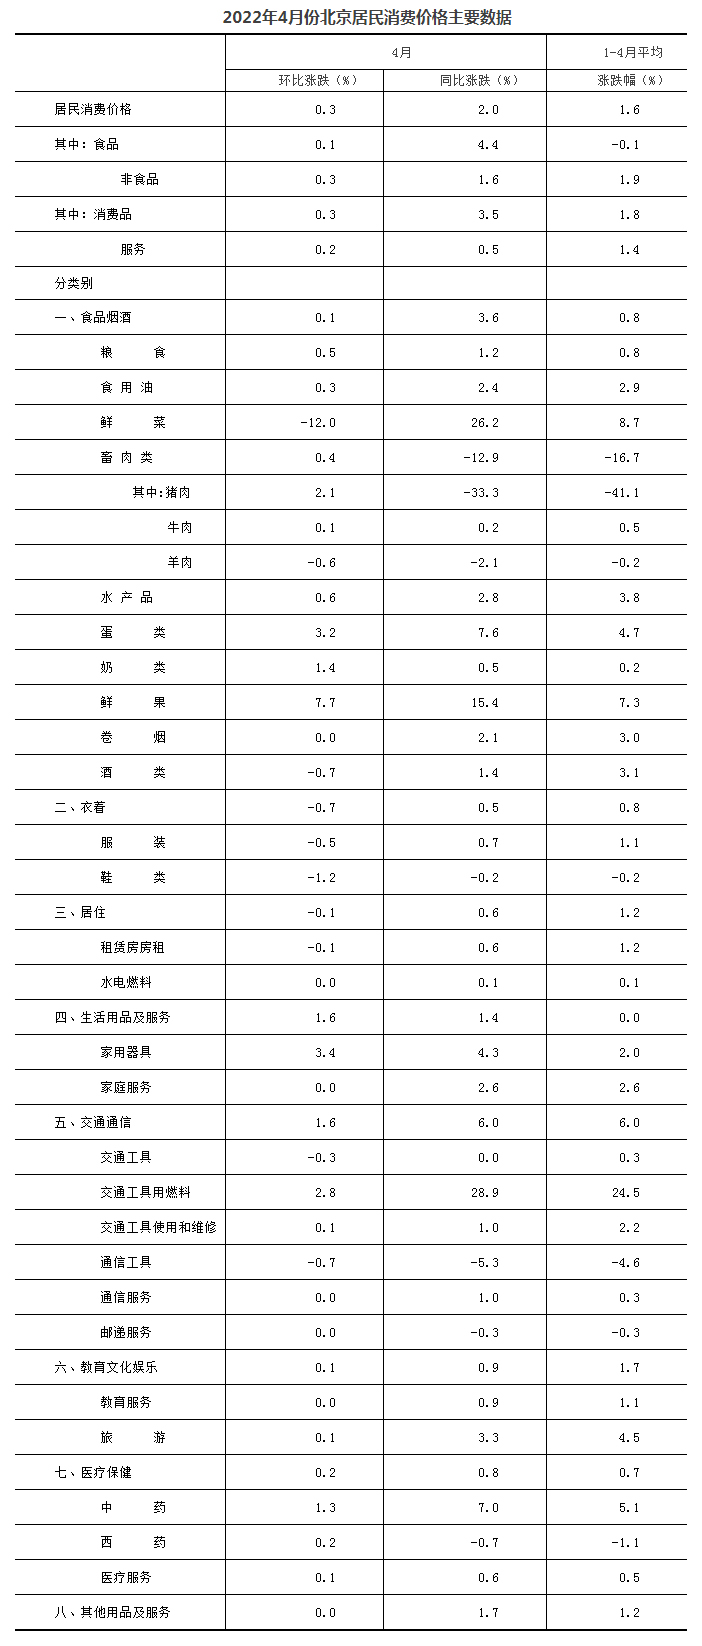 2022年4月份北京居民消费价格变动情况 (http://www.szcoop.com.cn/) 国内 第4张